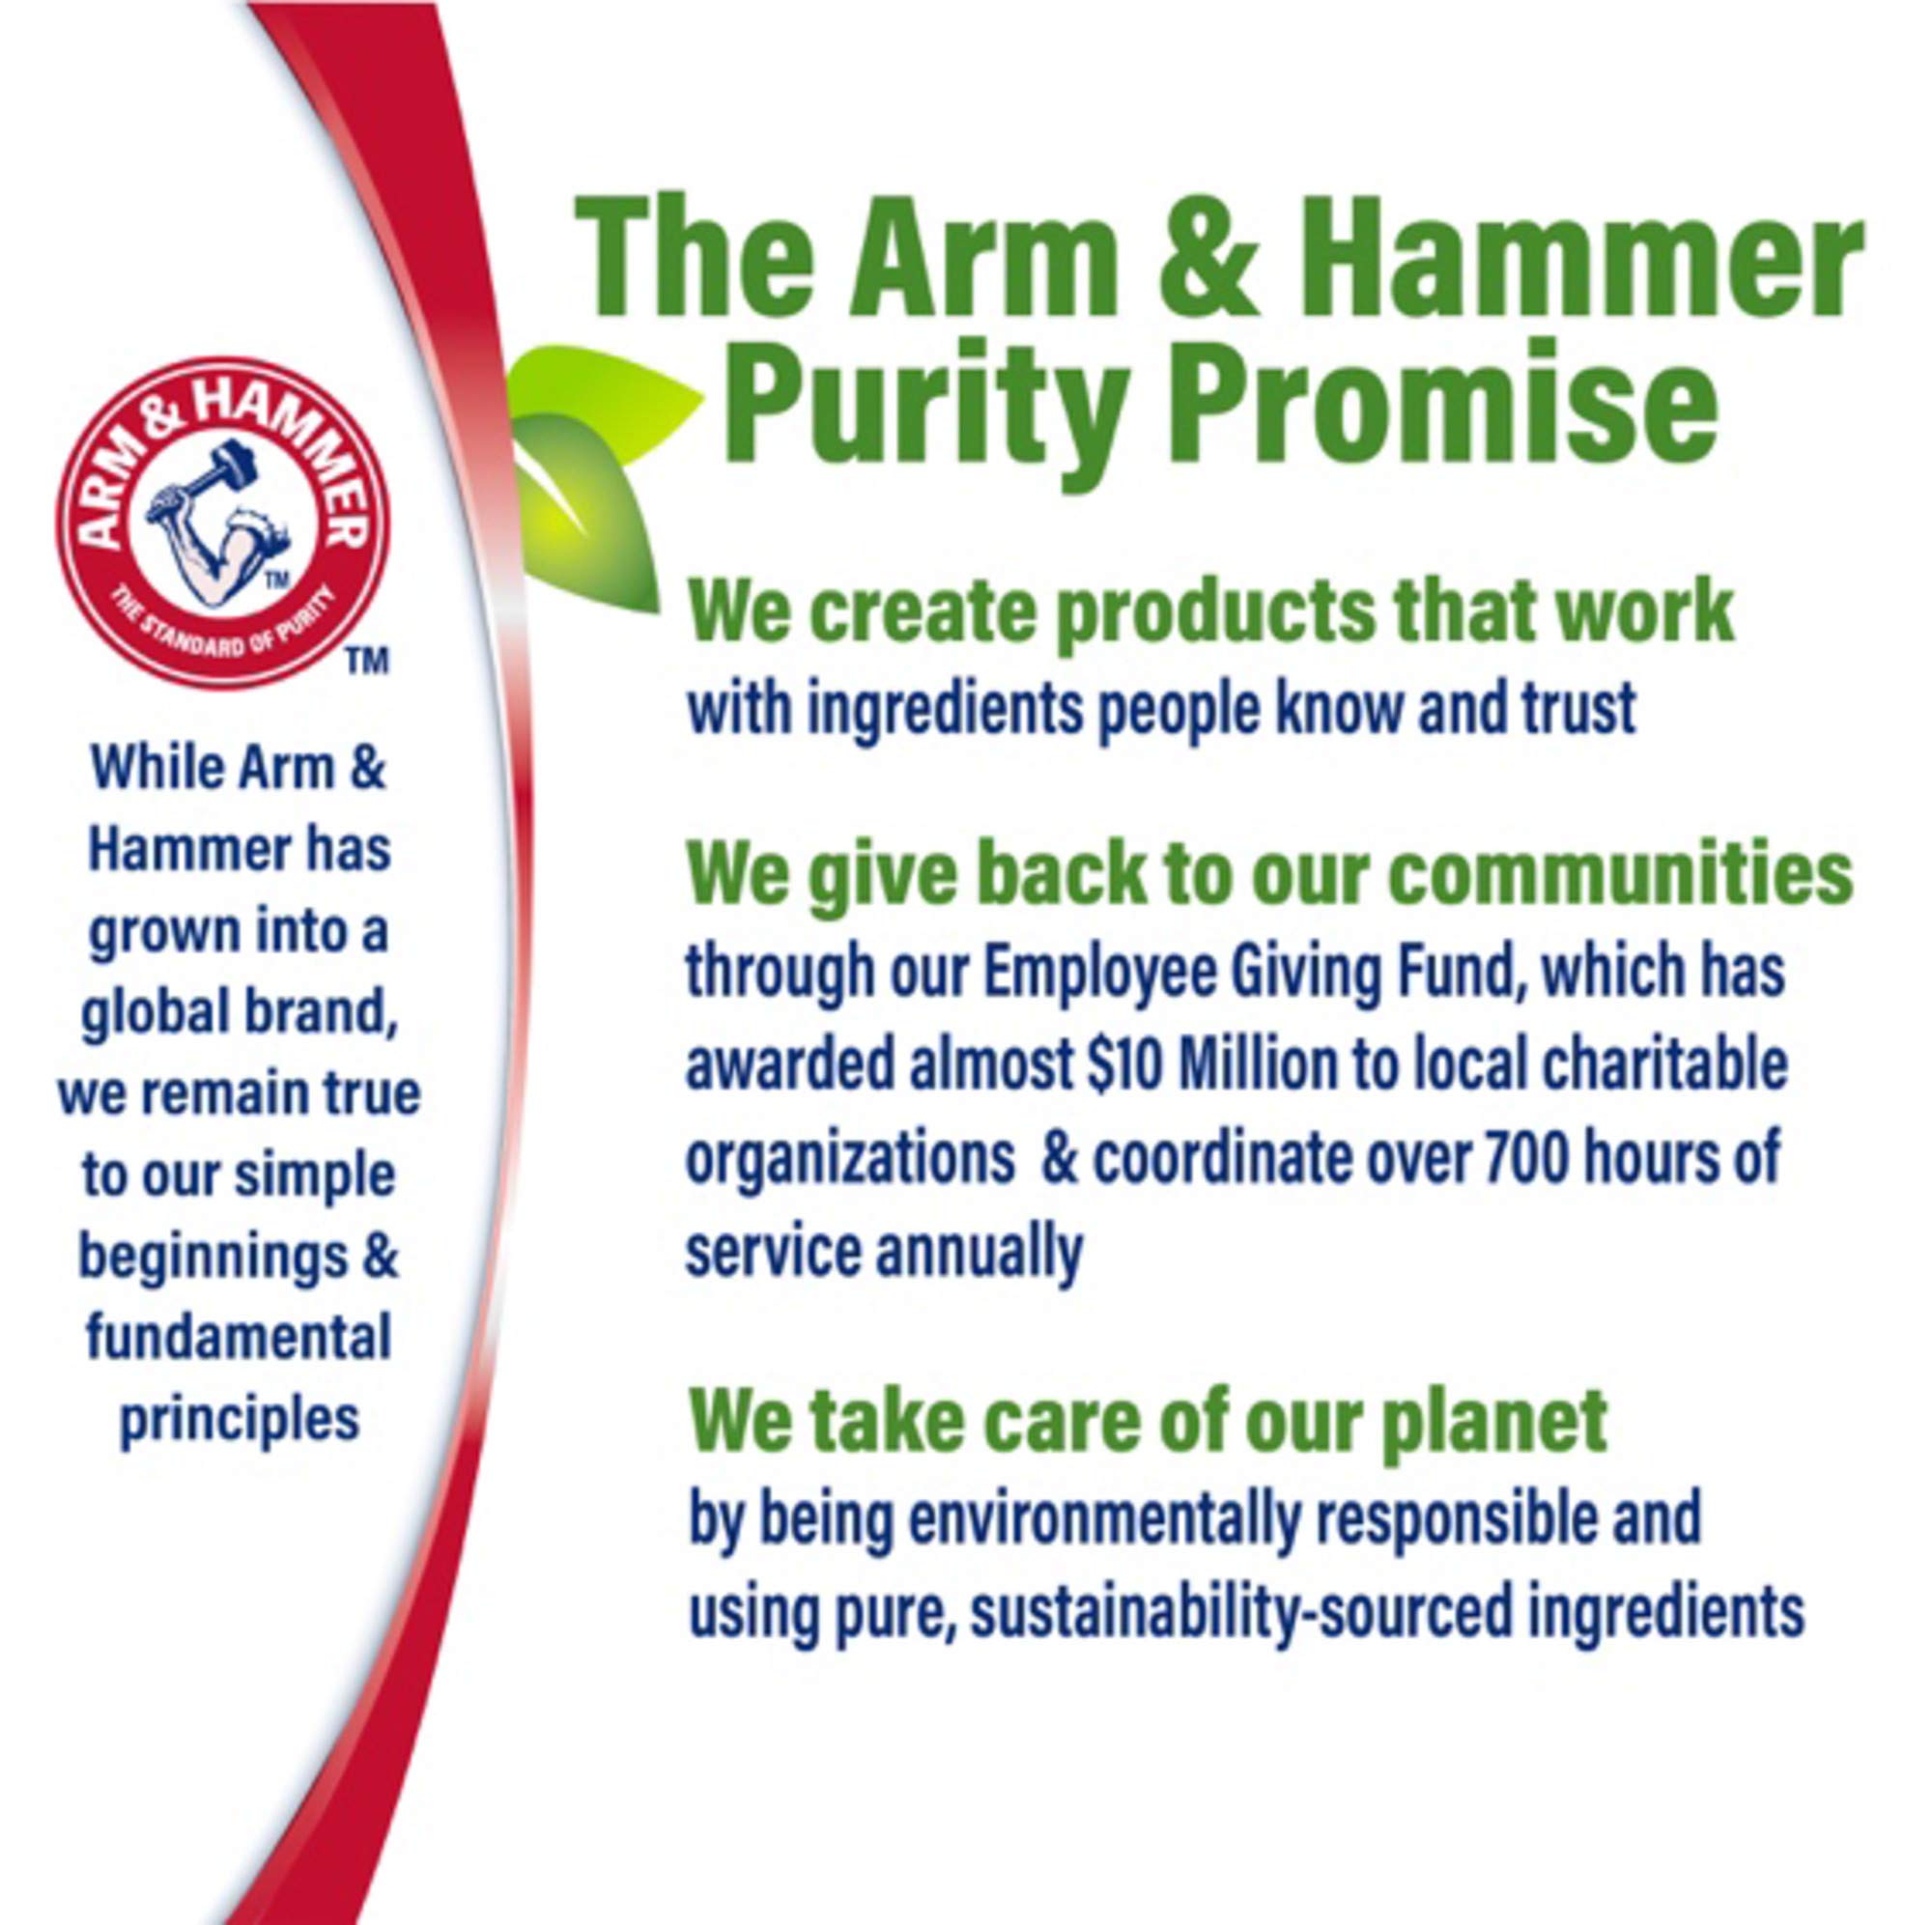 Arm & Hammer Essentials deodorant, crisp orange citrus, 2.5 ounce, 6 Count